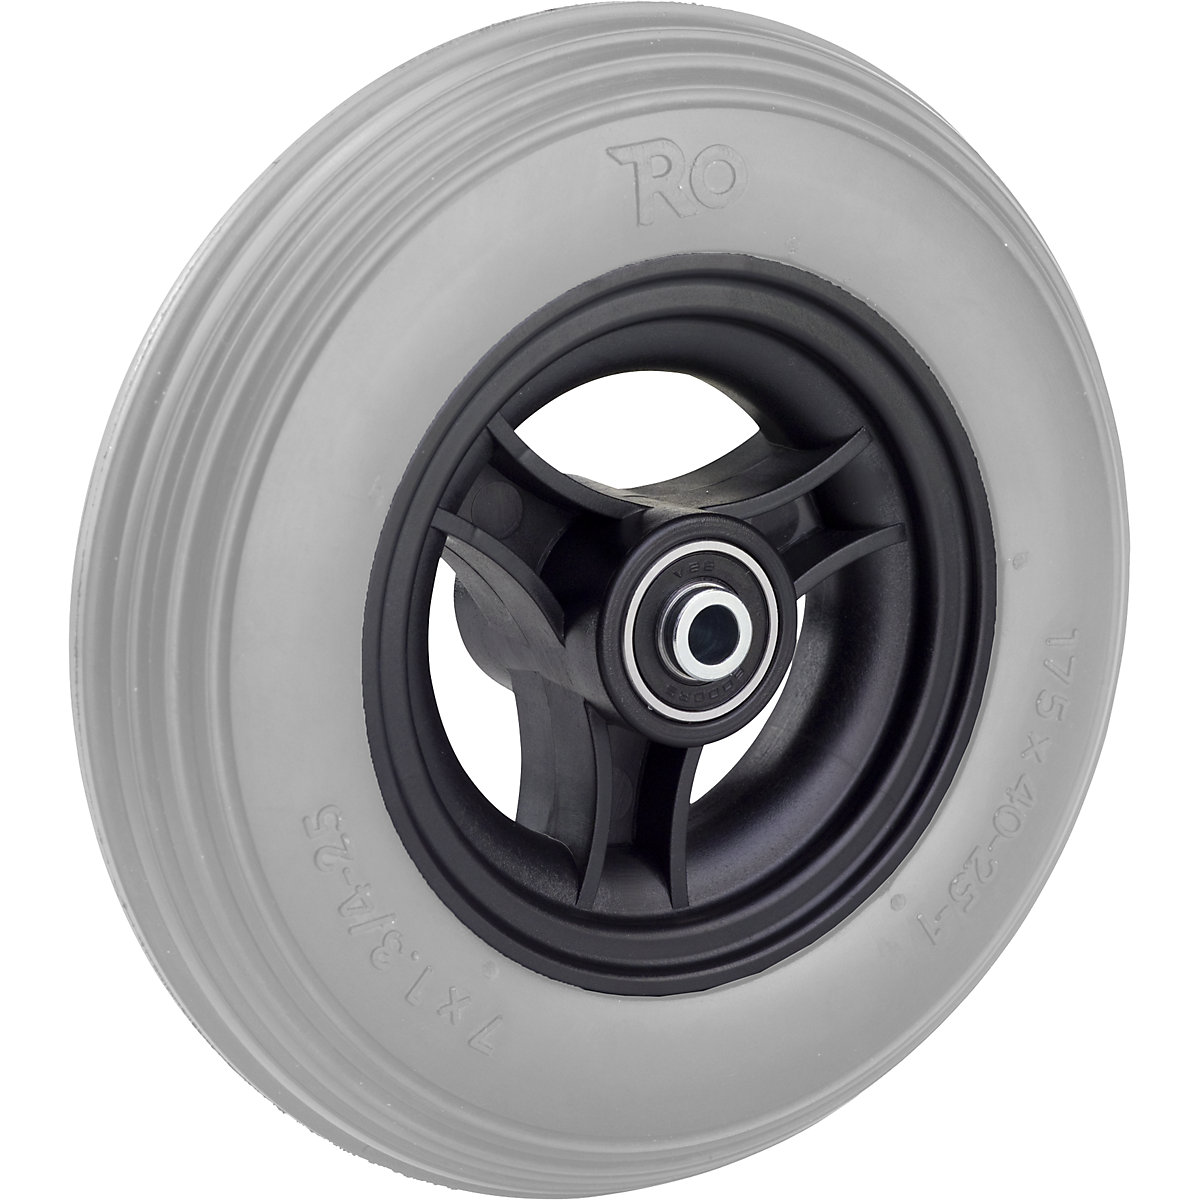 Roda com raios, com pneus de PU, não deixam marcas, Ø da roda x largura 170 x 43 mm, a partir de 4 unid.-3